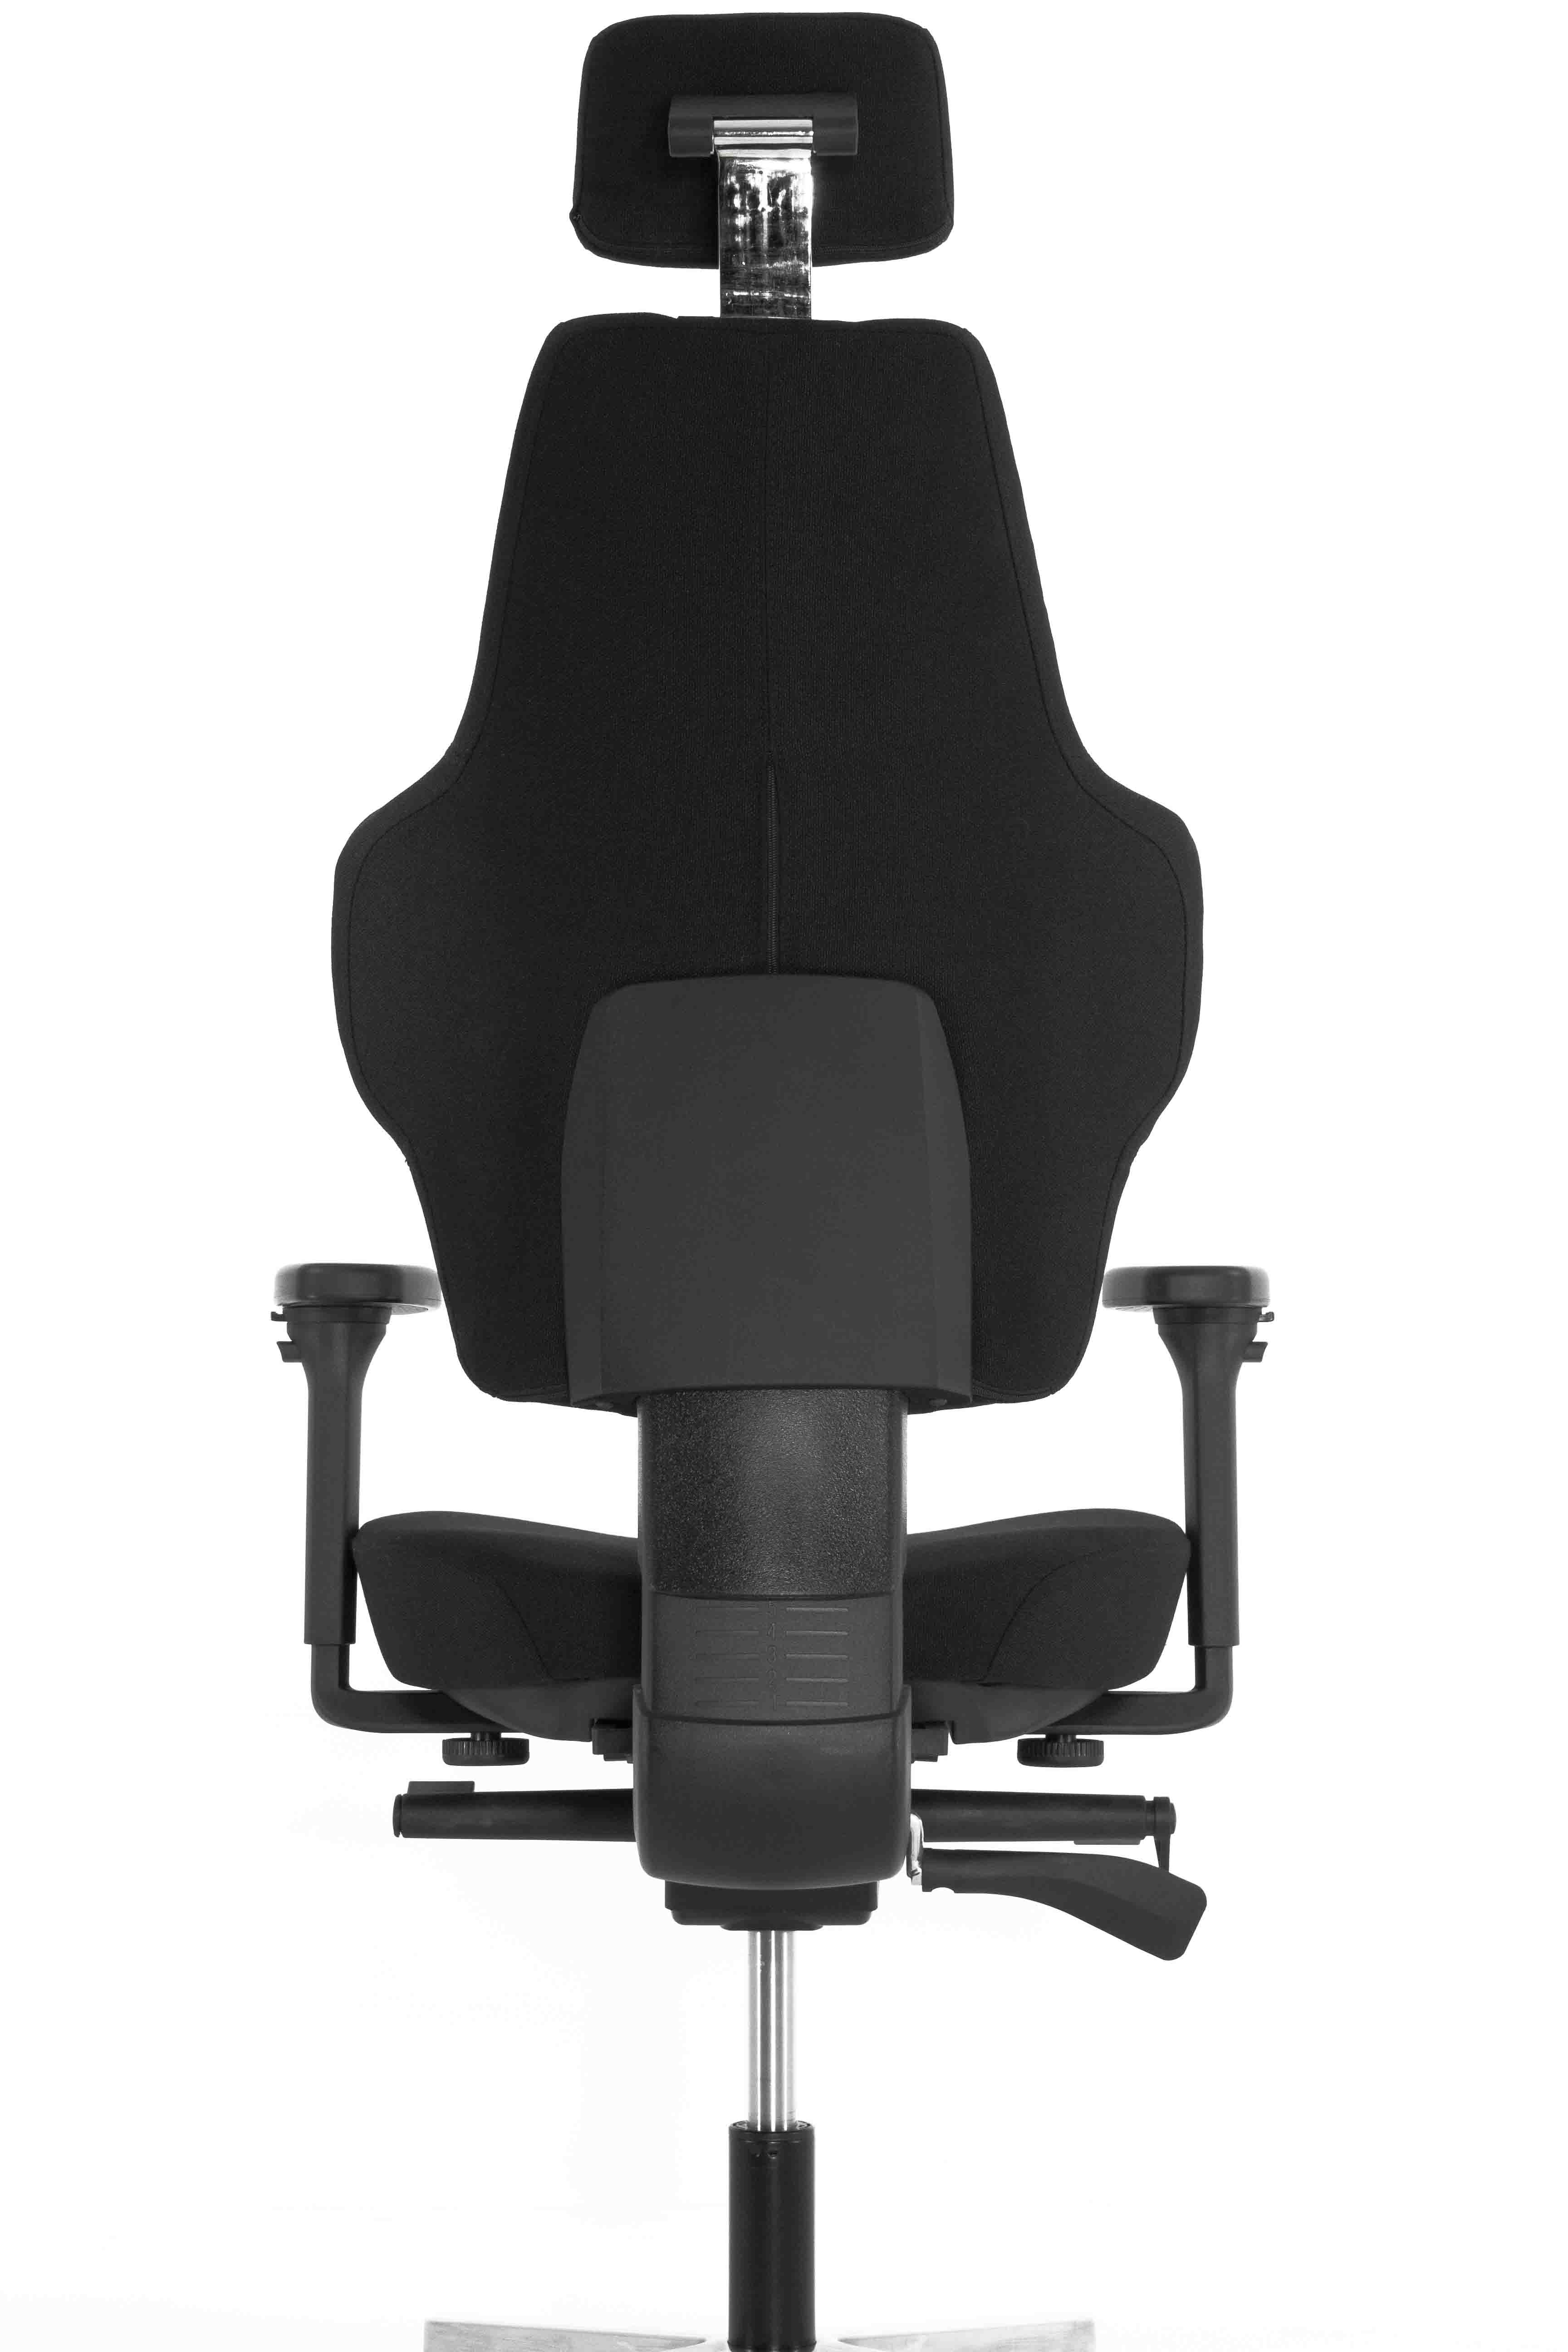 Эргономичное кресло Falto SMART-S 1706-2H Fighter black 60999 (черный каркас / черная ткань / АЛ крестовина)